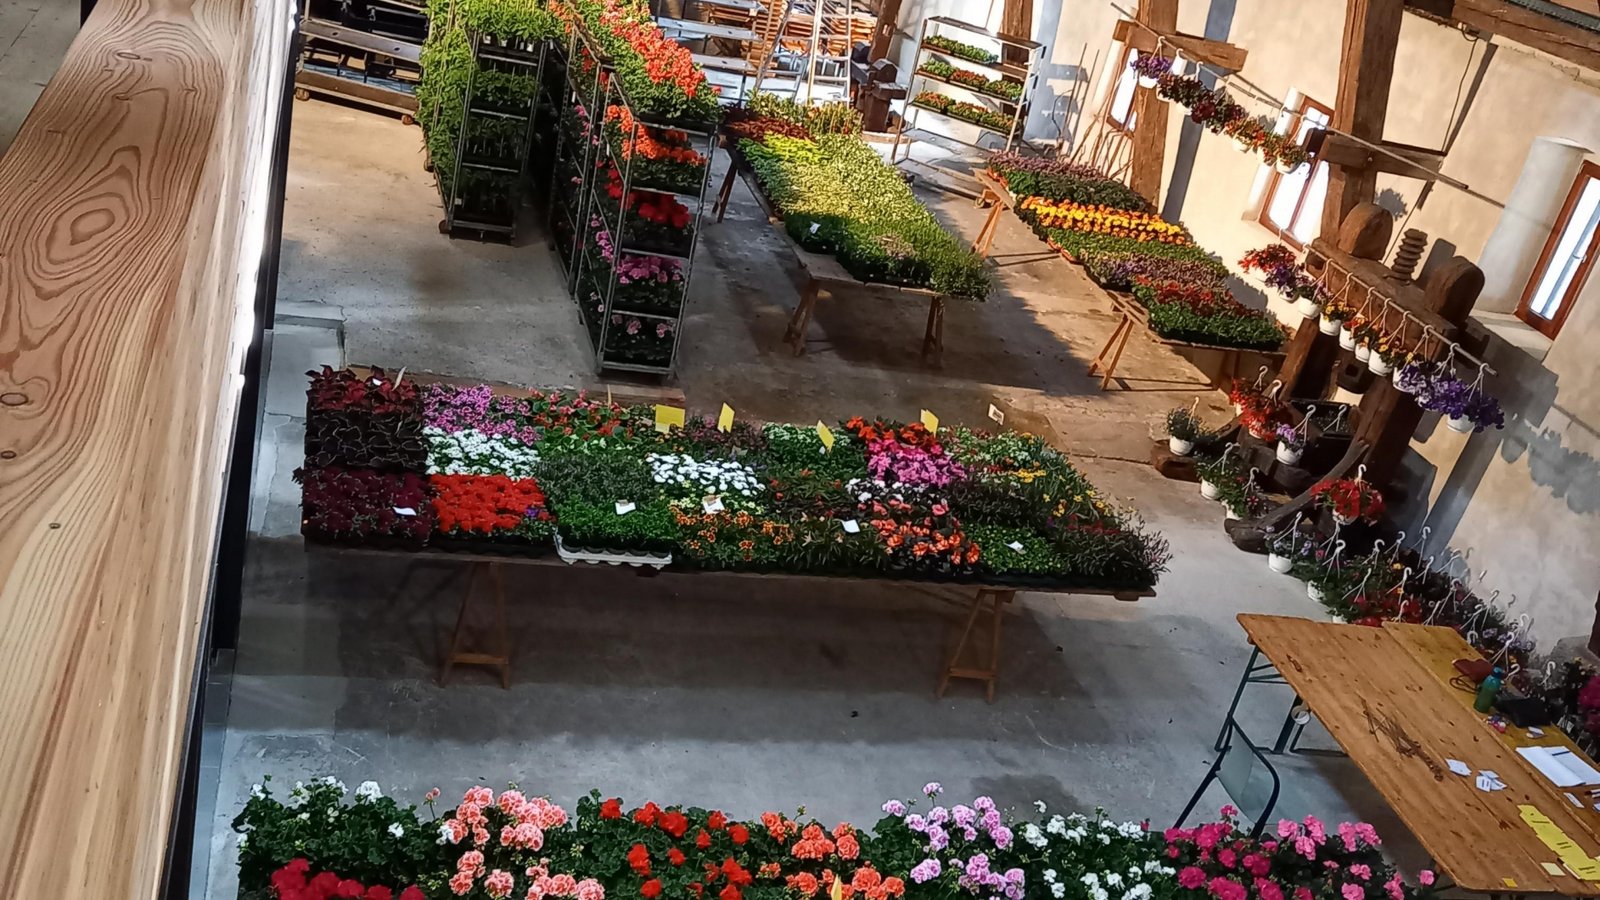 Der Obst- und Gartenbauverein (OGV) Horrheim lädt heute (7. Mai) von 7.30 bis 14 Uhr zum ersten Mal zum Blumenmarkt in der Alten Kelter ein. Interessierte finden dort eine Auswahl an Blumen und Gemüsepflanzen. Dabei kann bestimmt auch das eine oder andere farbenfrohe Muttertagsgeschenk erworben werden.  Foto: p